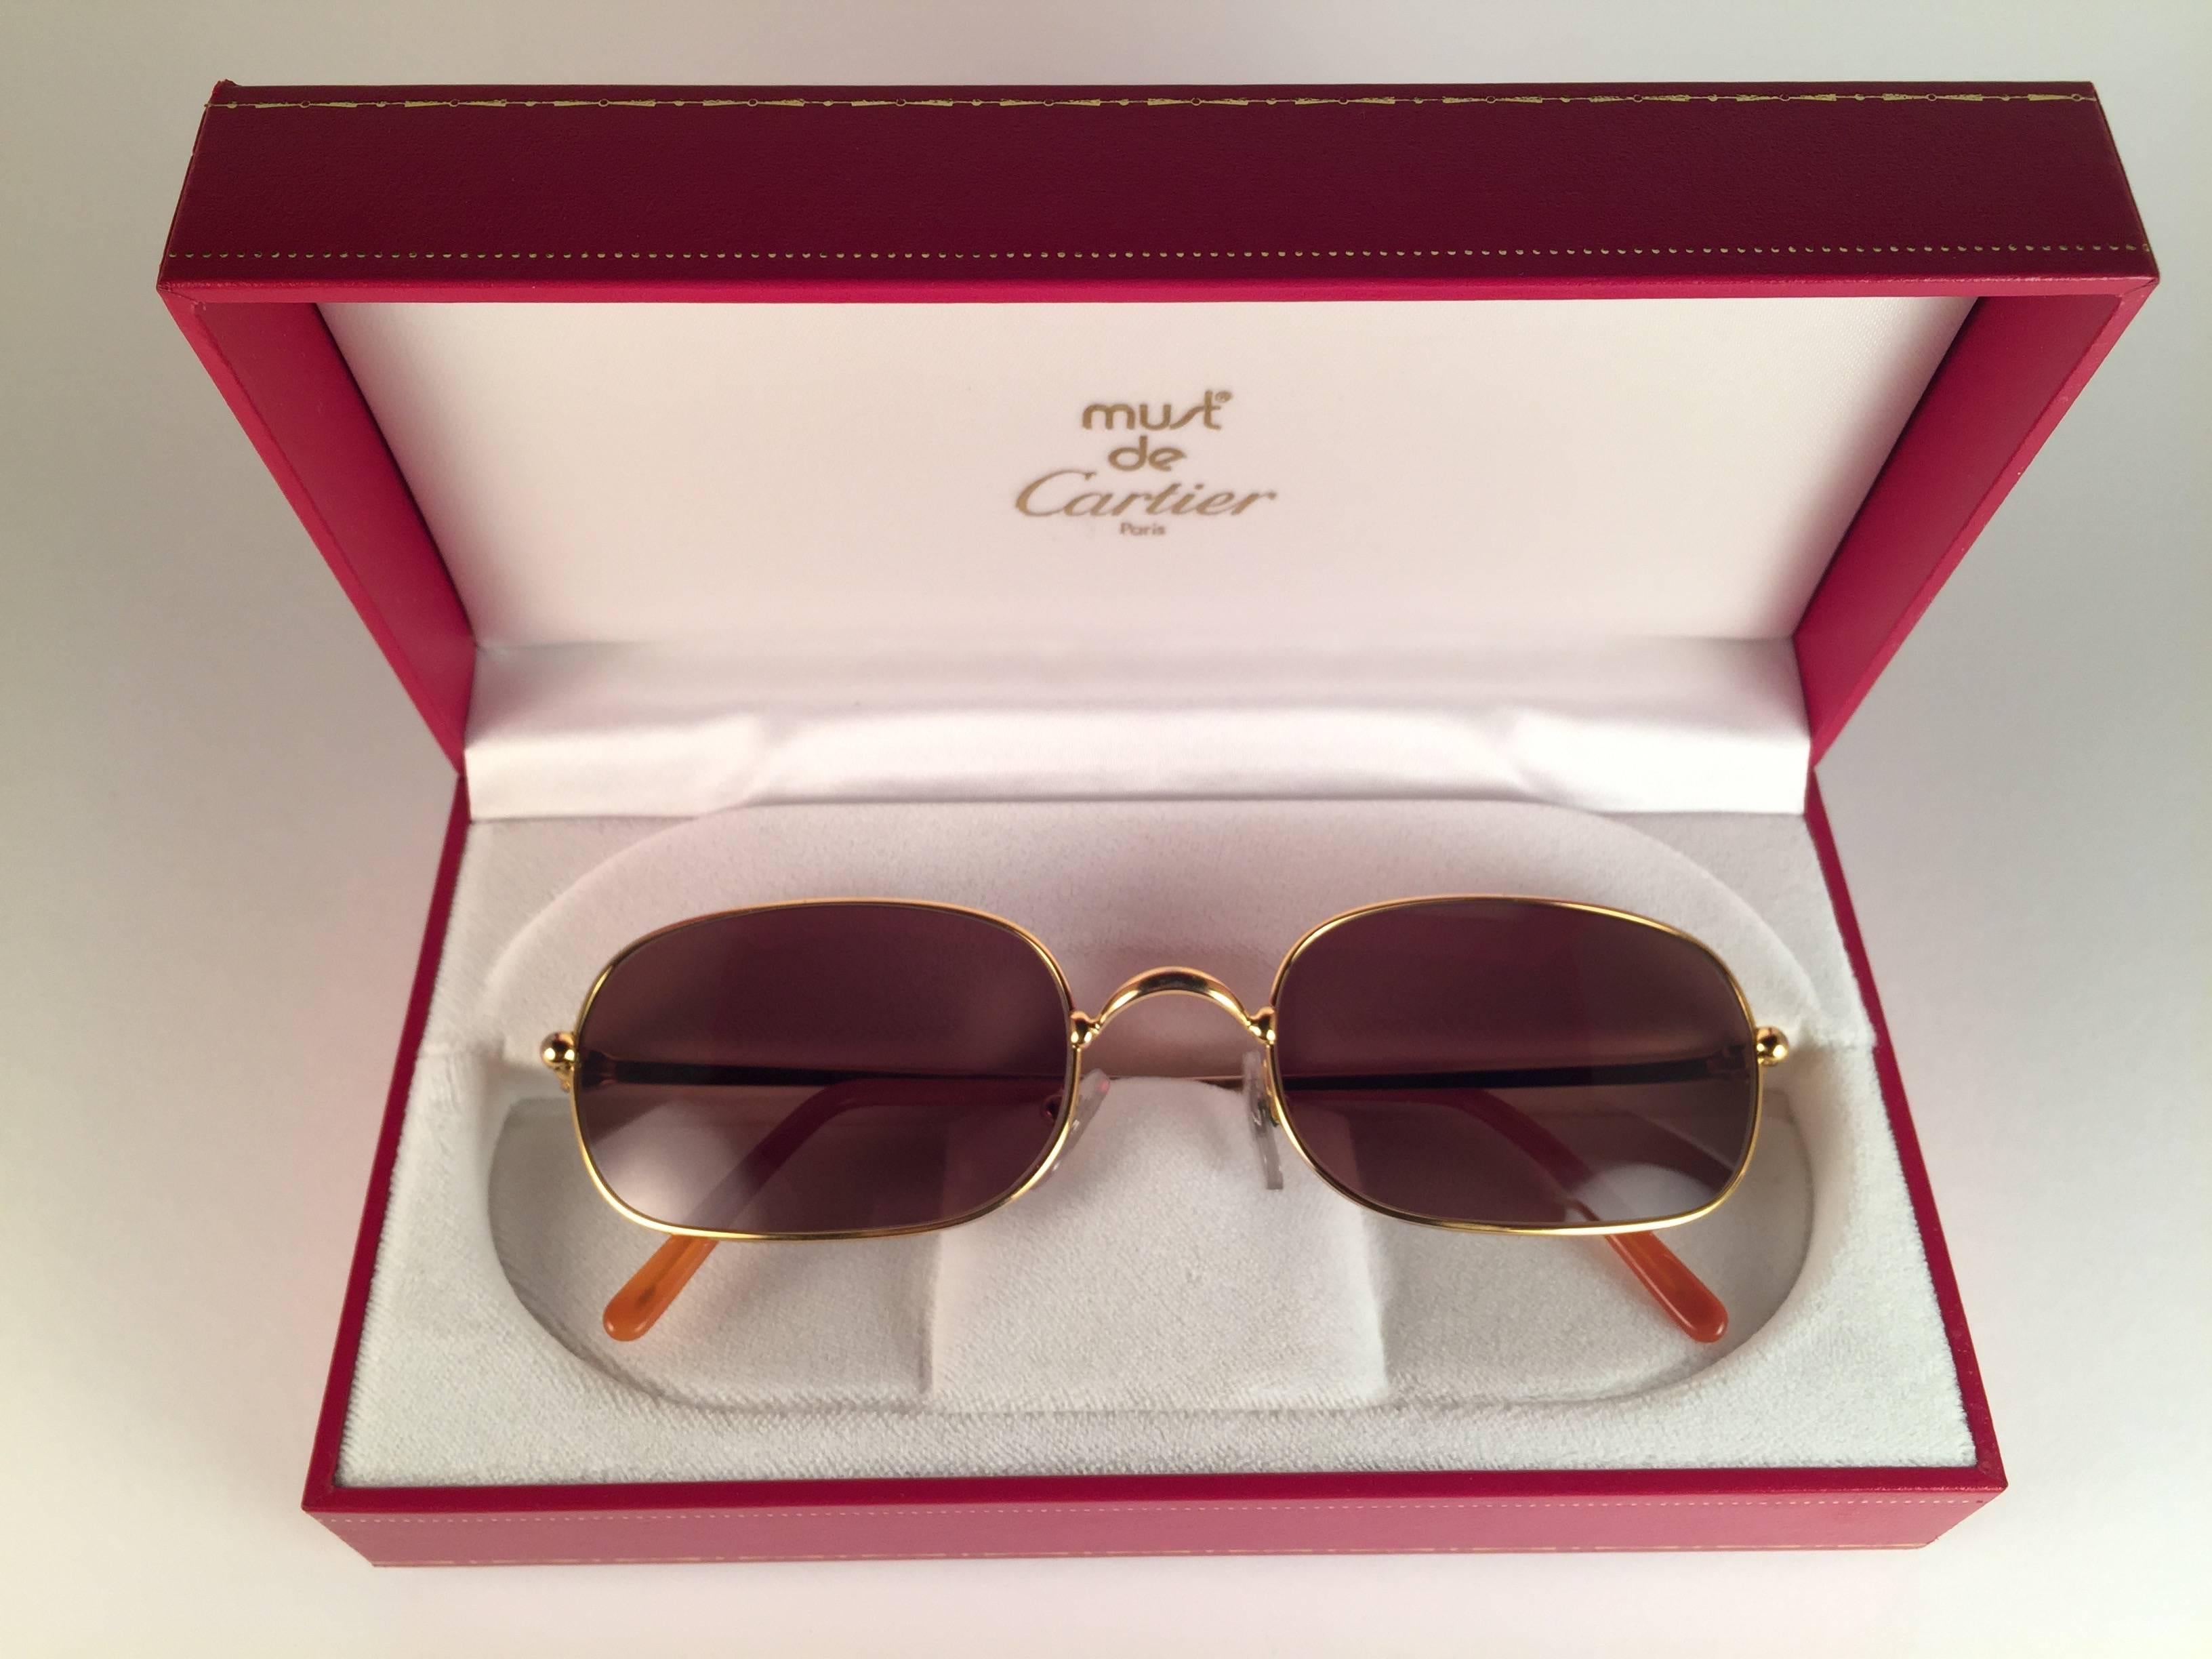 Neuwertige 1990 Cartier DeimIos 52 MM Sonnenbrille mit braunen (UV-Schutz) Gläsern.  Alle Markenzeichen. Cartier-Goldzeichen auf den Ohrmuscheln. Sie sind wie ein Paar Juwelen auf der Nase. Schönes Design und ein echtes Zeichen der Zeit. Original